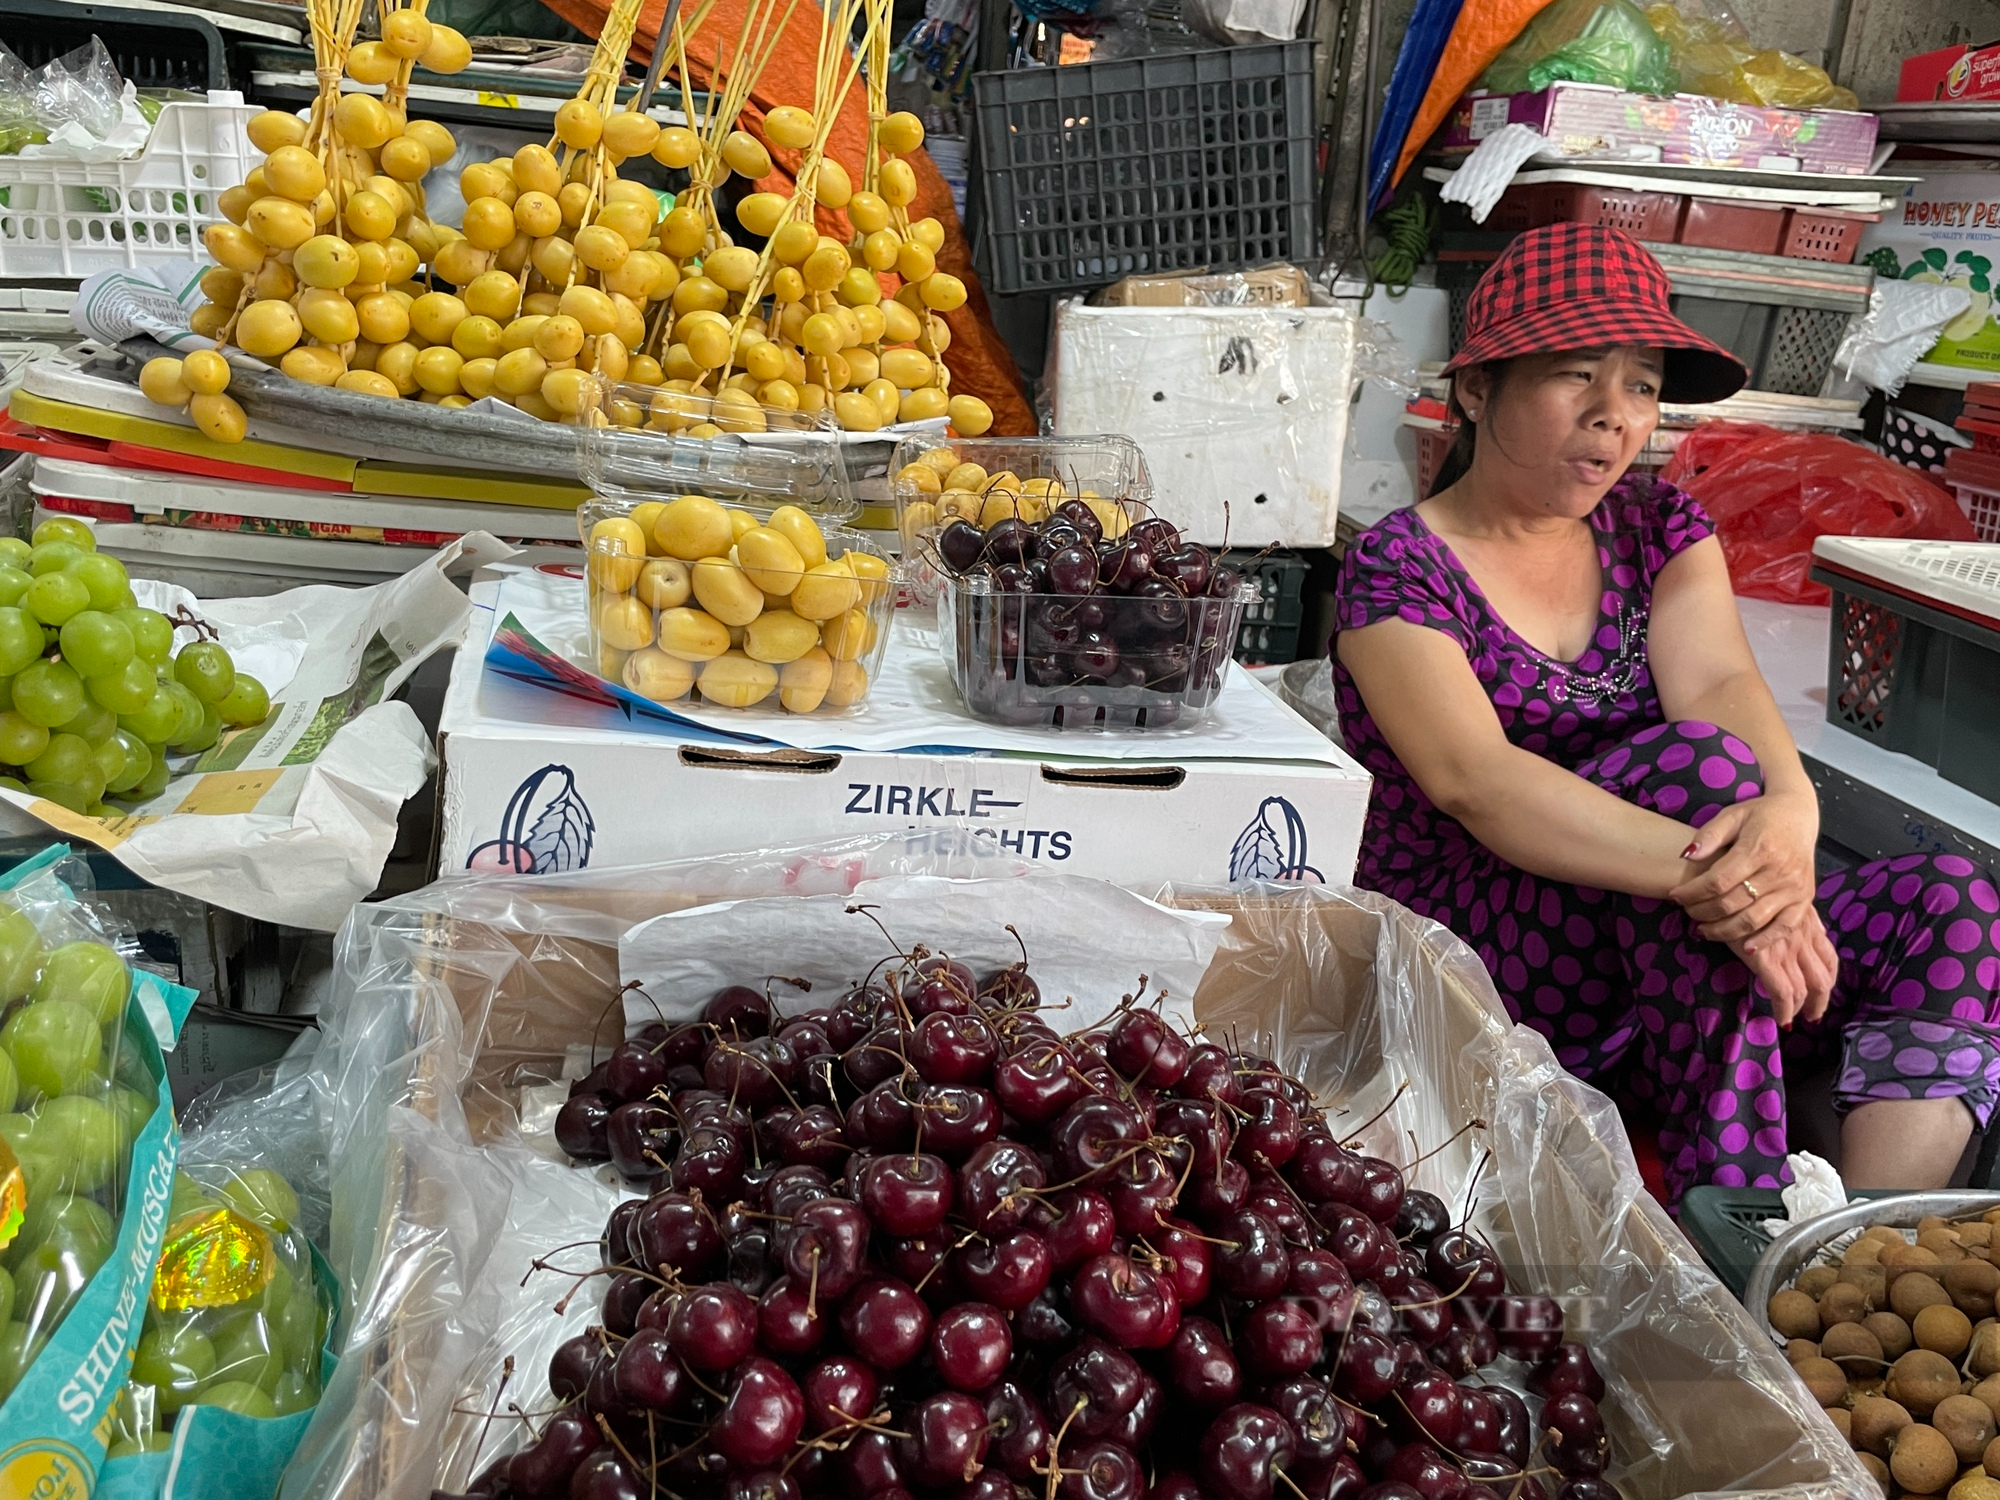 Loại trái cây nhập khẩu từ Mỹ, nhà giàu Việt khoái ăn đang có giá rẻ kỷ lục - Ảnh 1.